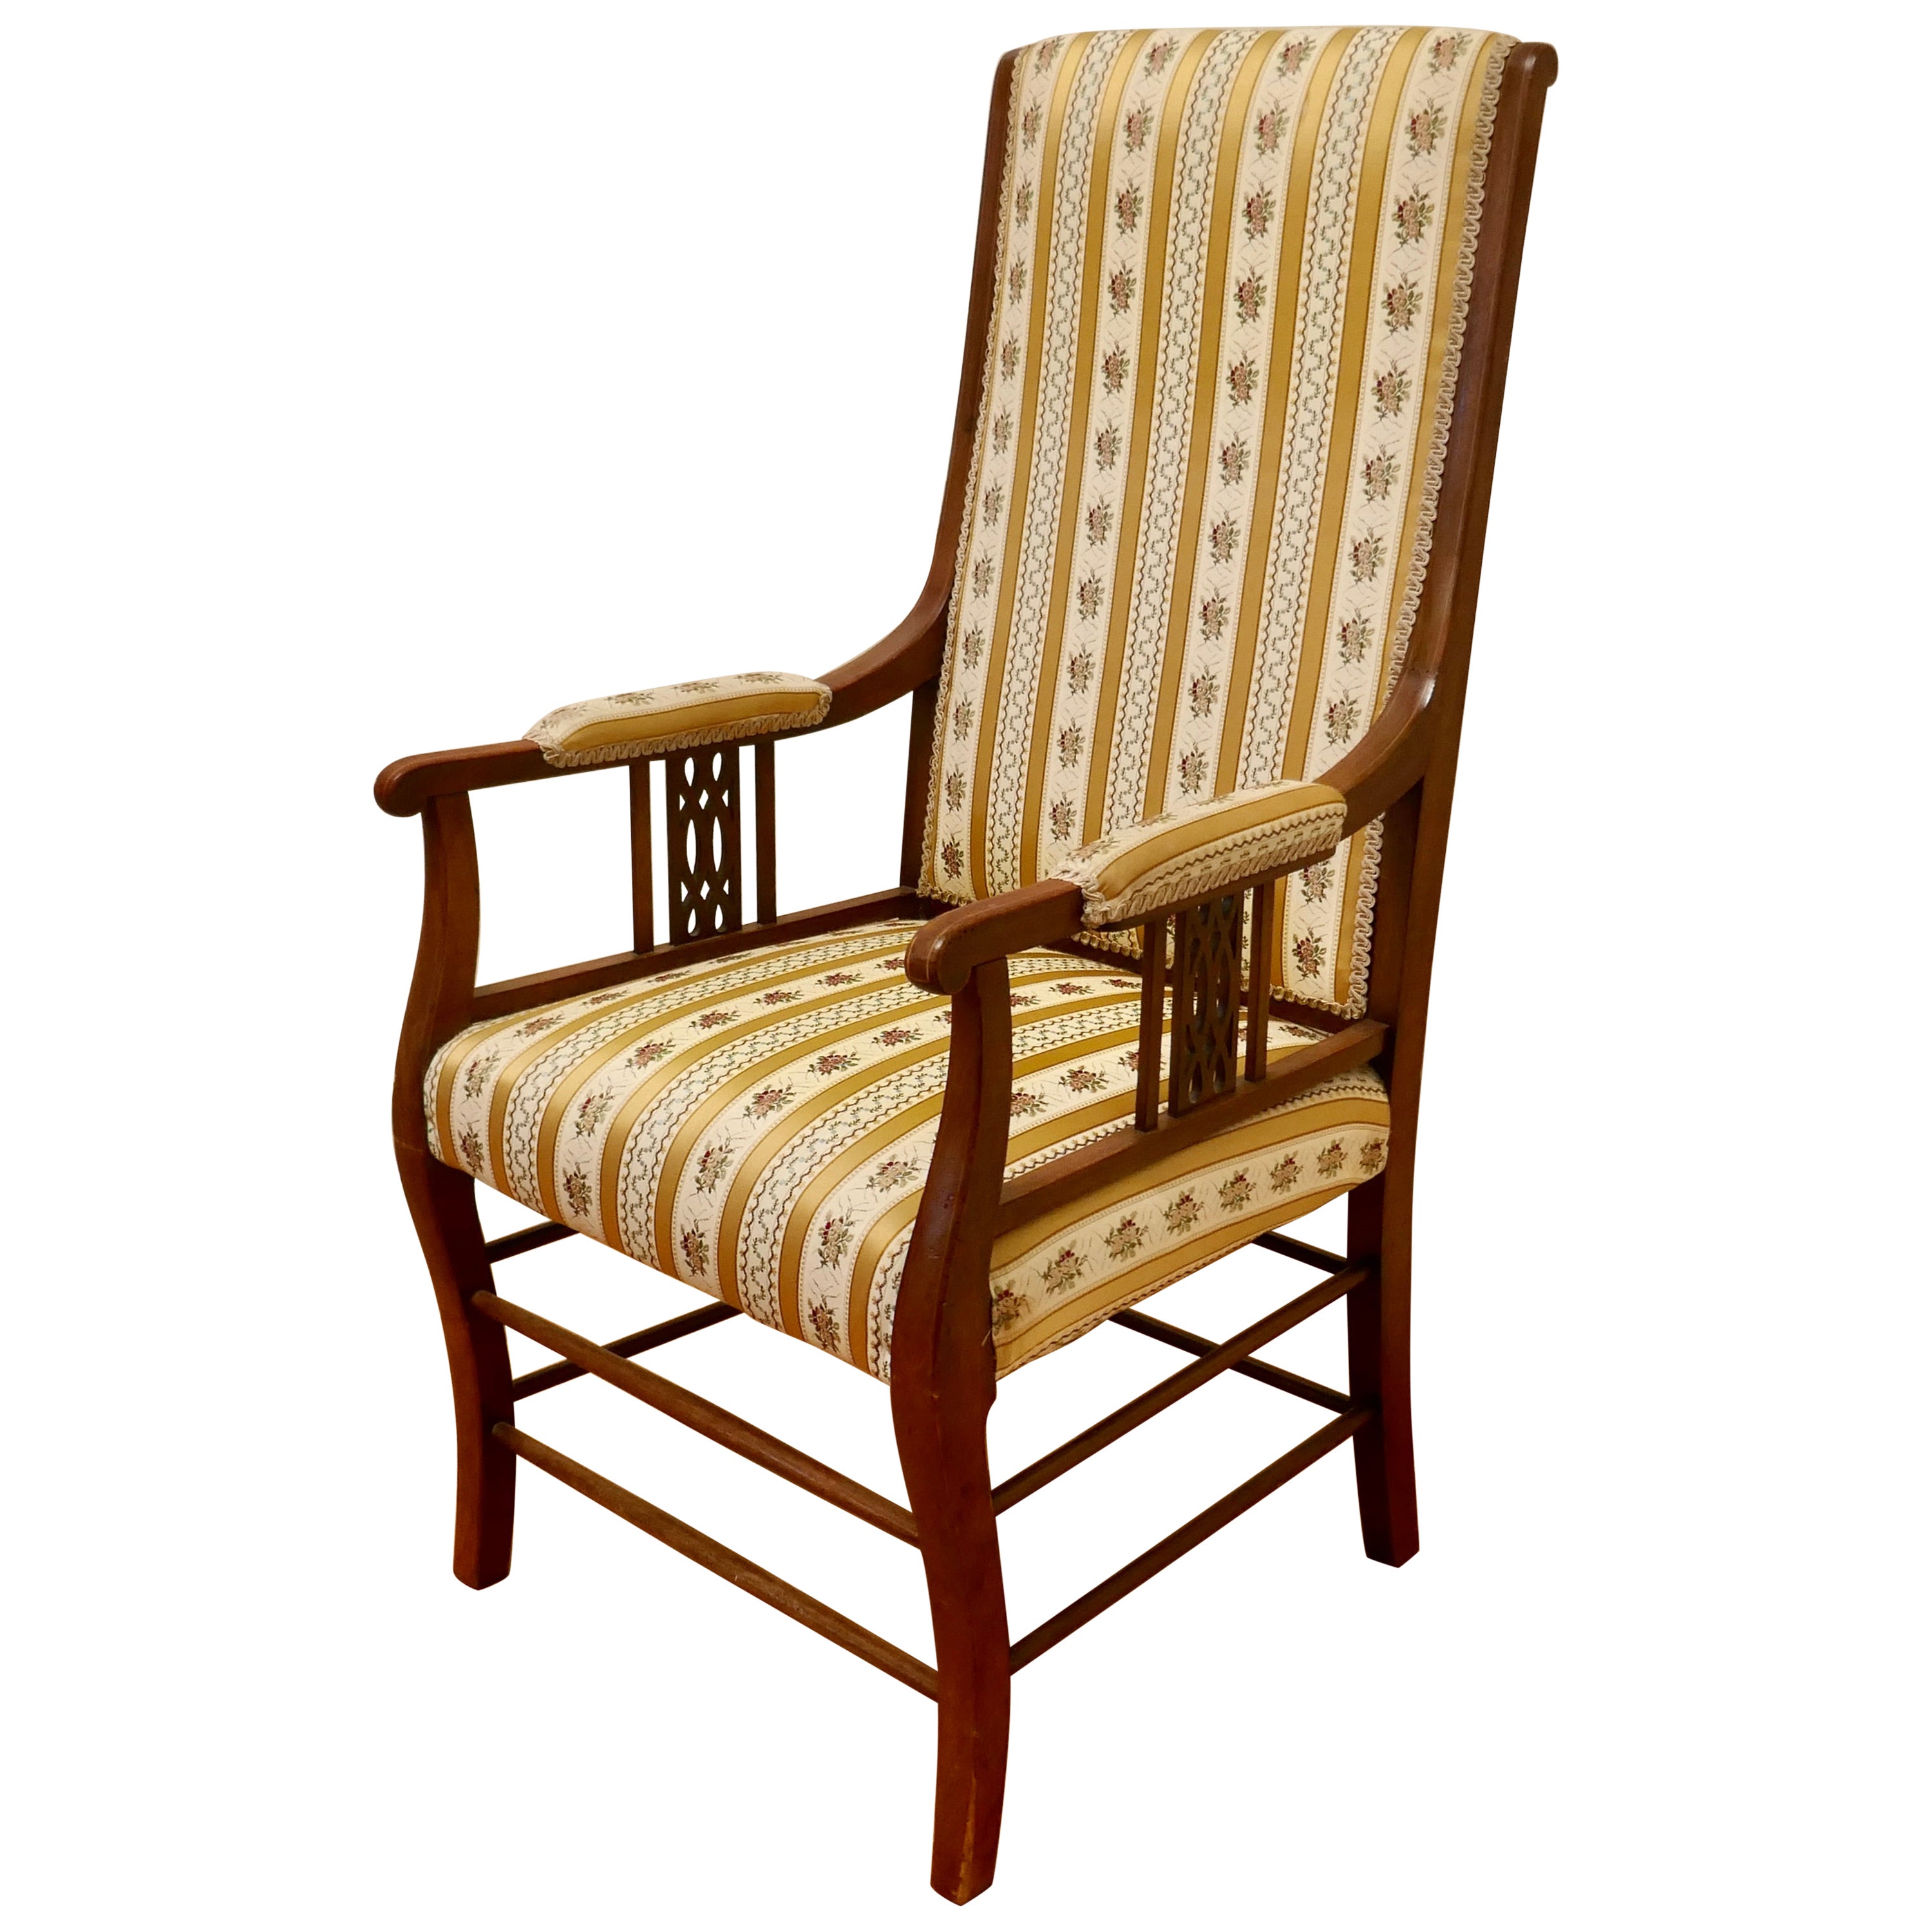 Hochgepolsterter Sessel mit hoher Rückenlehne im Regency-Stil von hoher Qualität